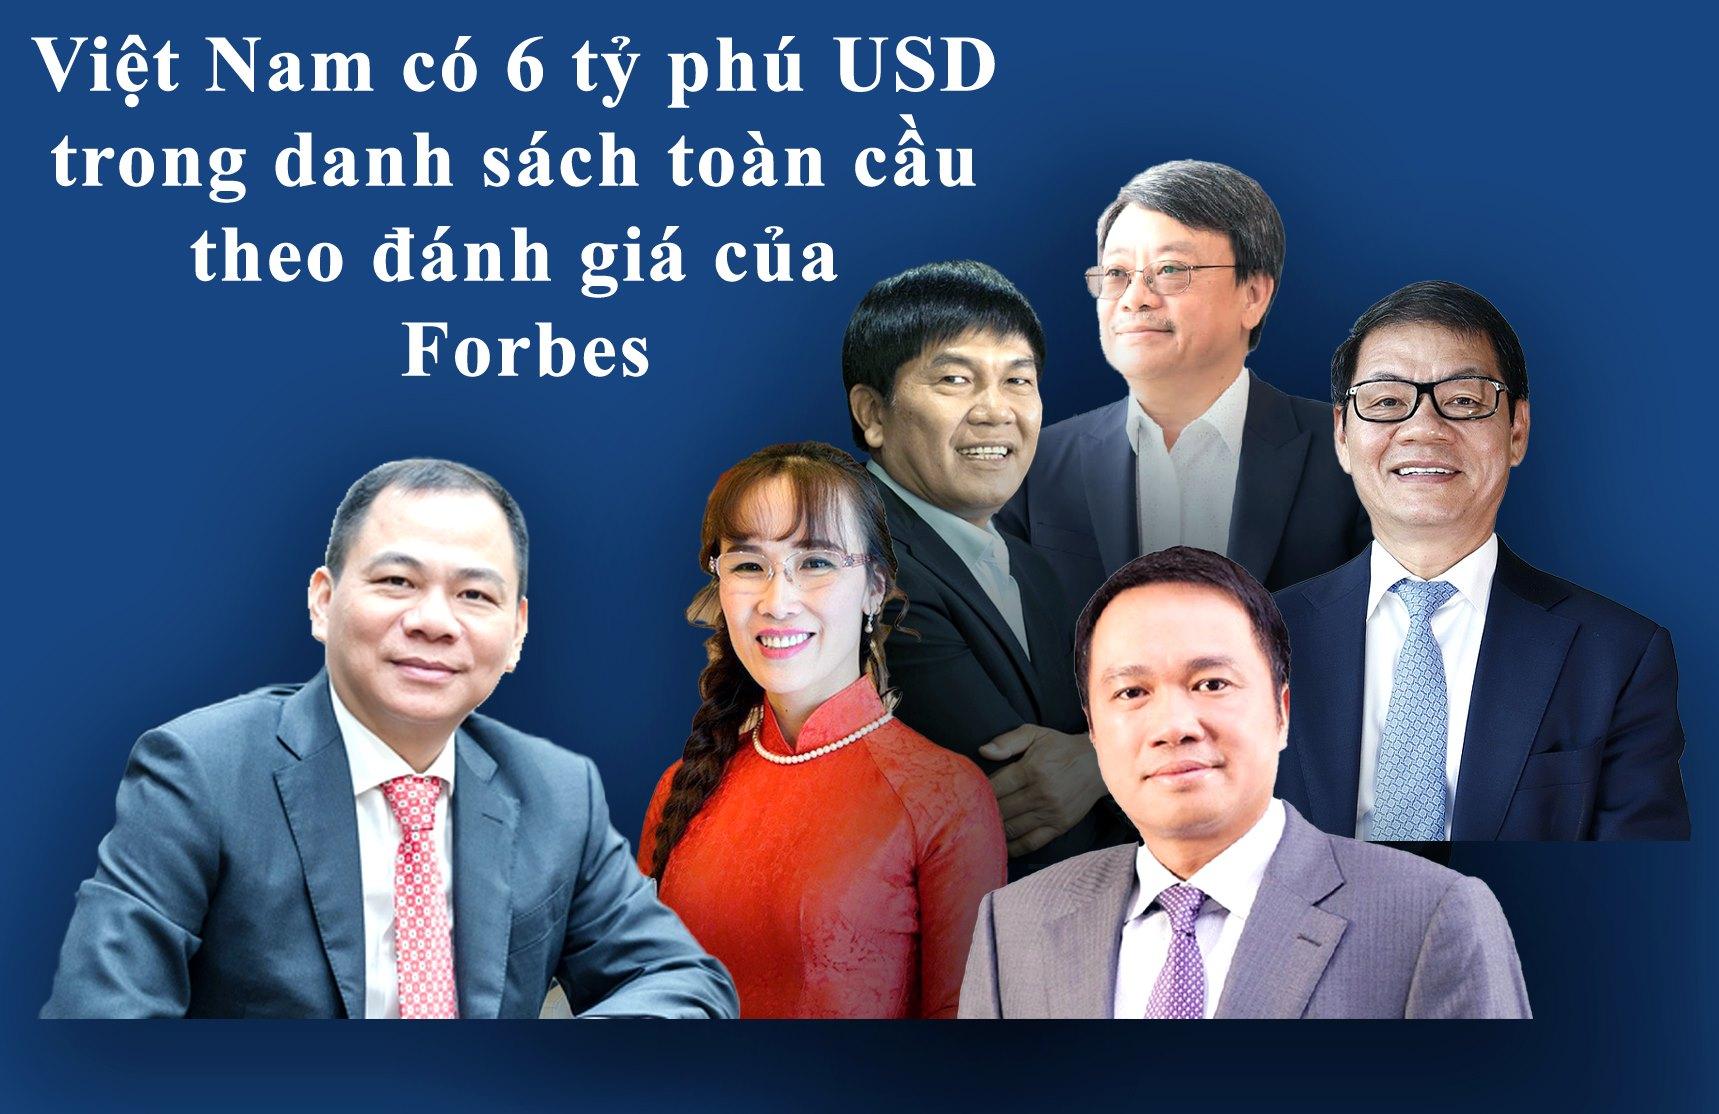 Việt Nam lần đầu tiên có 6 tỷ phú USD trên xếp hạng toàn cầu